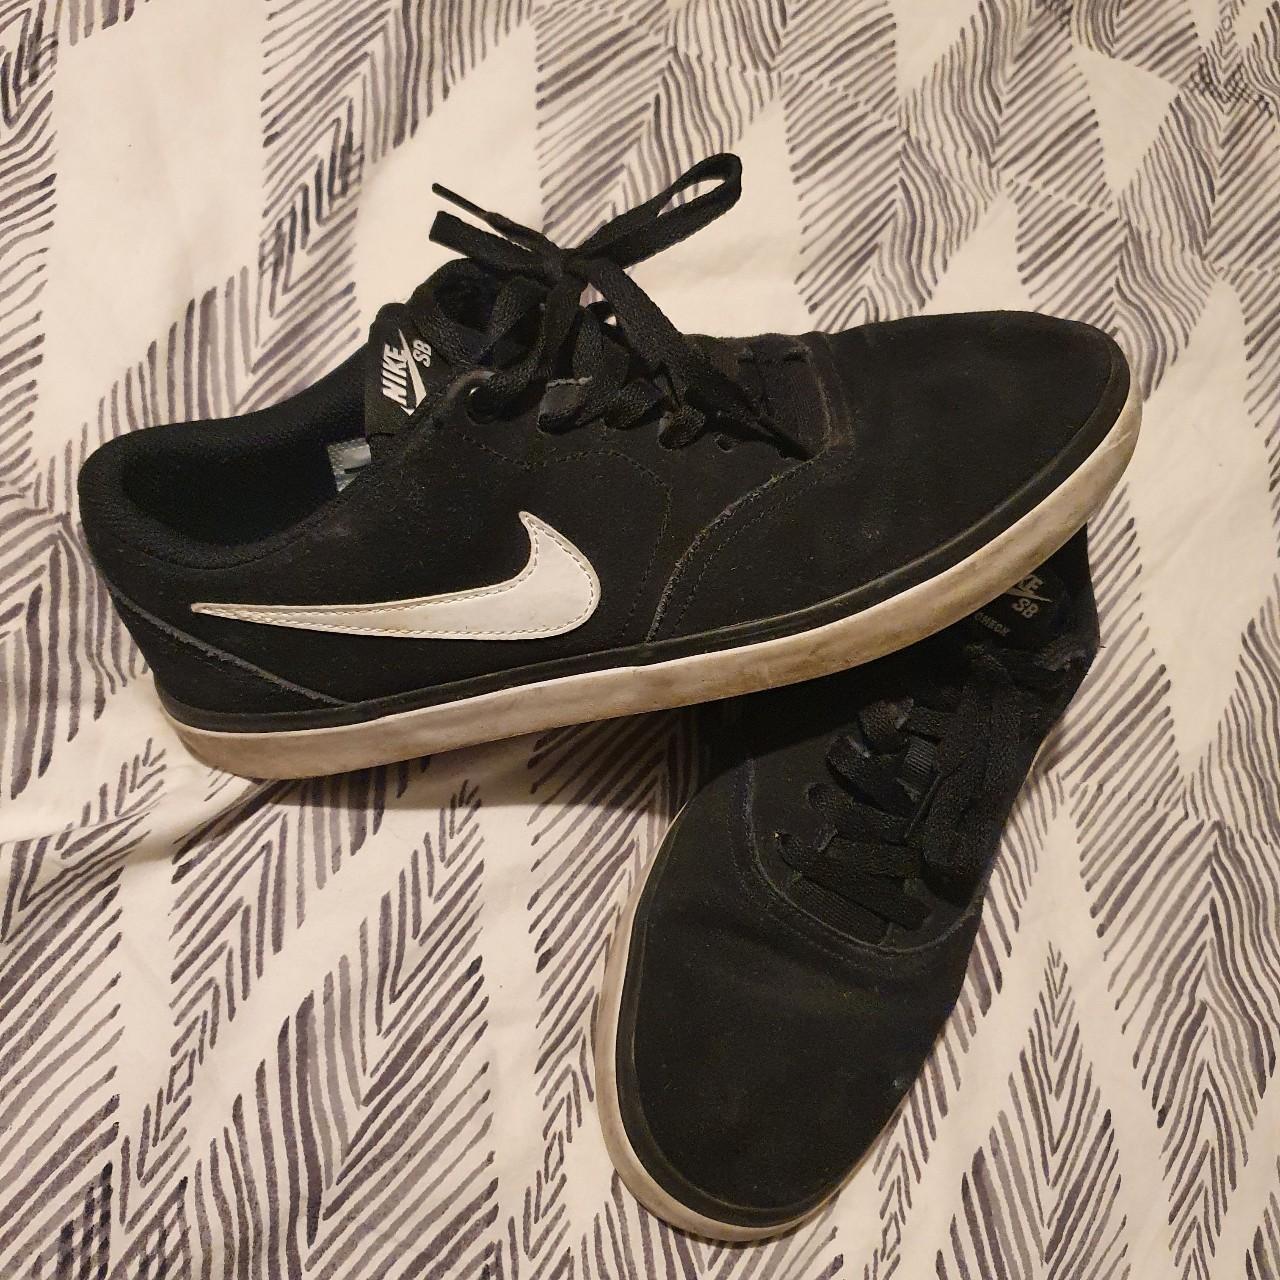 Black Nike skate shoes. Suitable for men or... - Depop